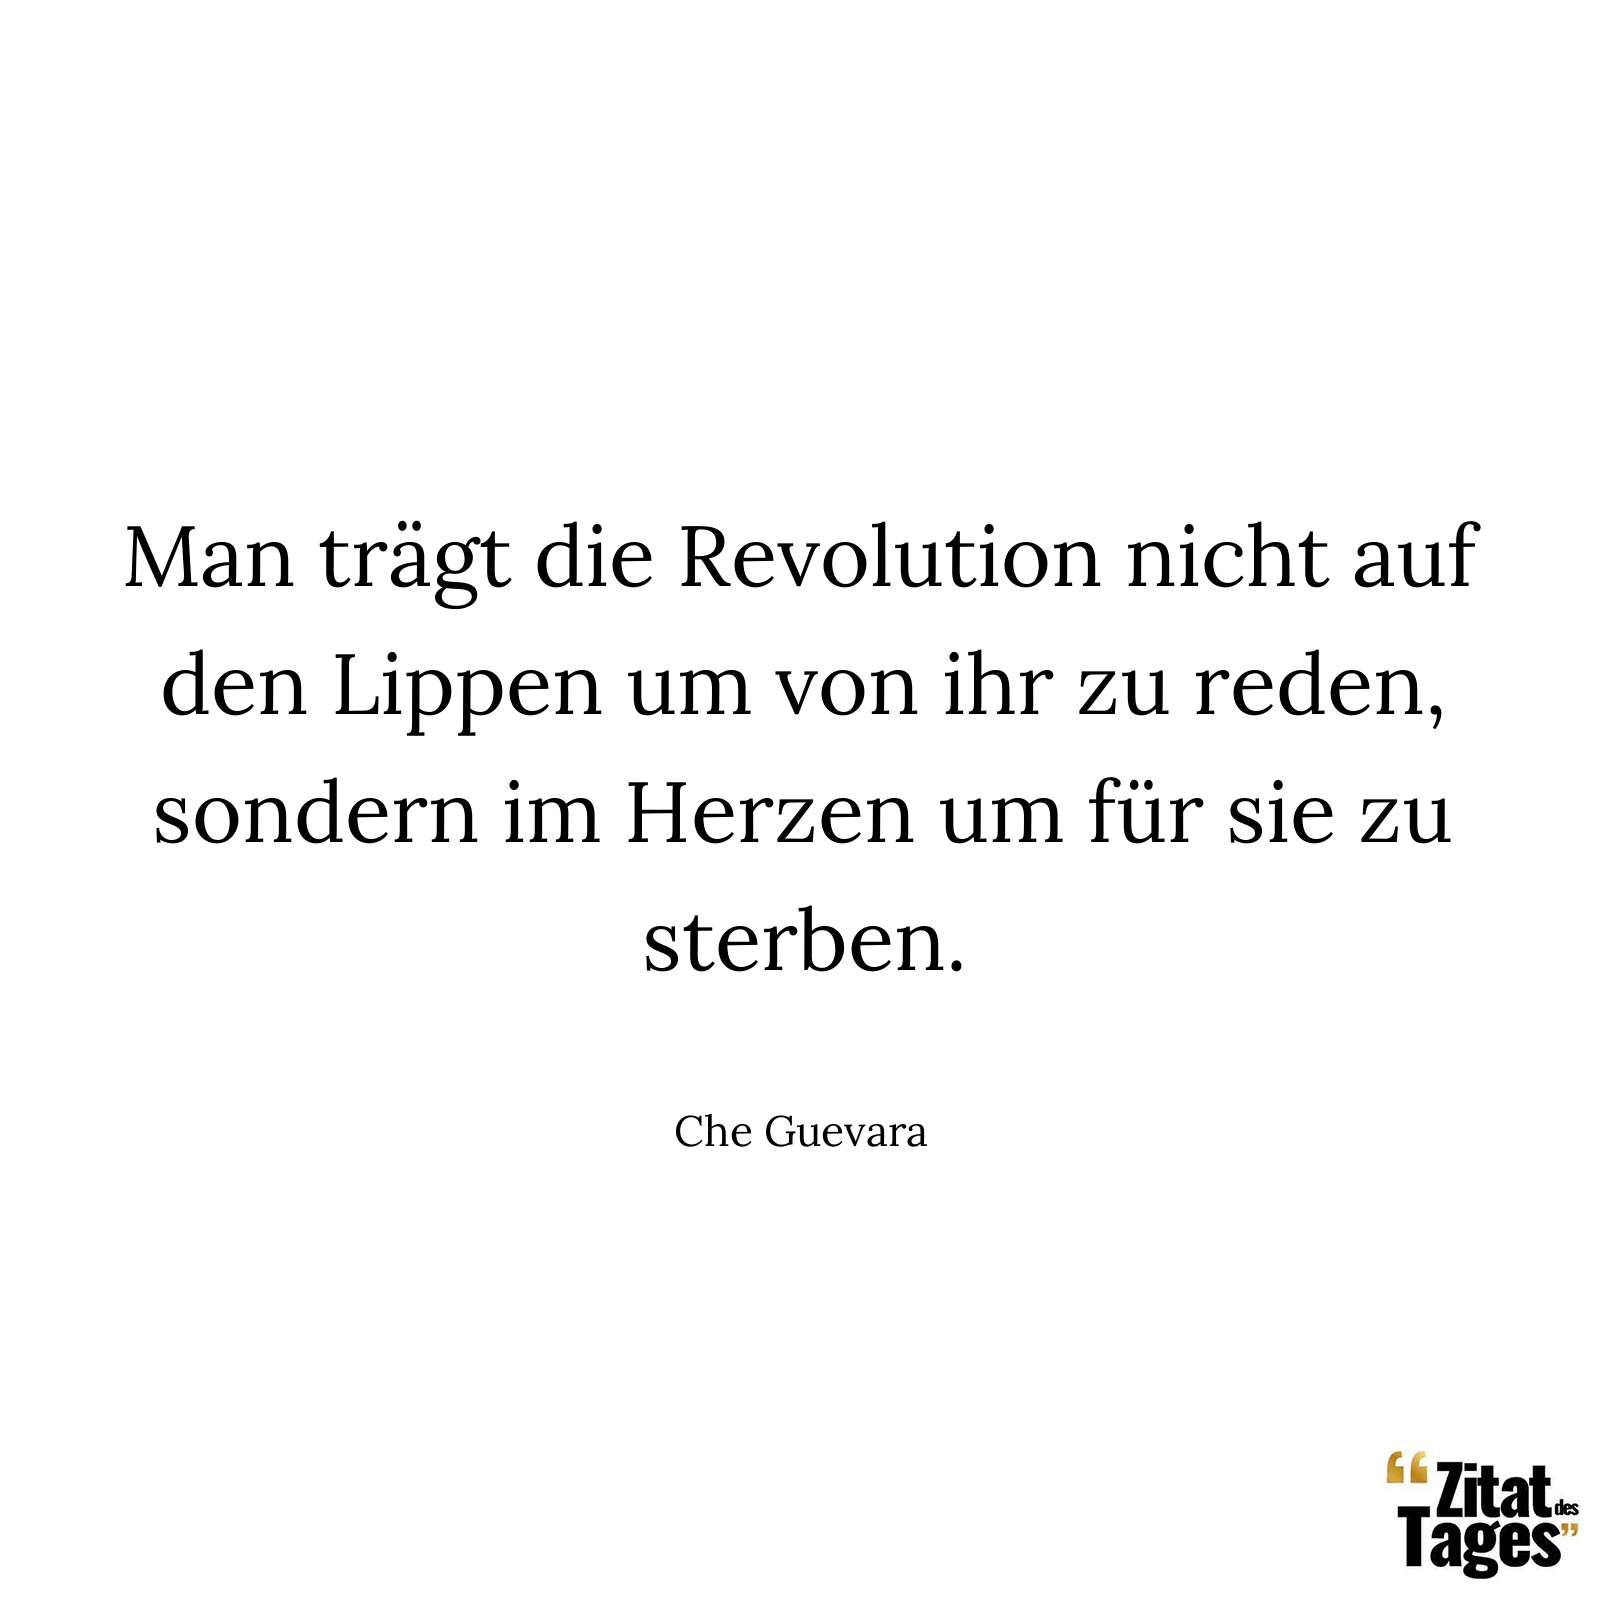 Man trägt die Revolution nicht auf den Lippen um von ihr zu reden, sondern im Herzen um für sie zu sterben. - Che Guevara